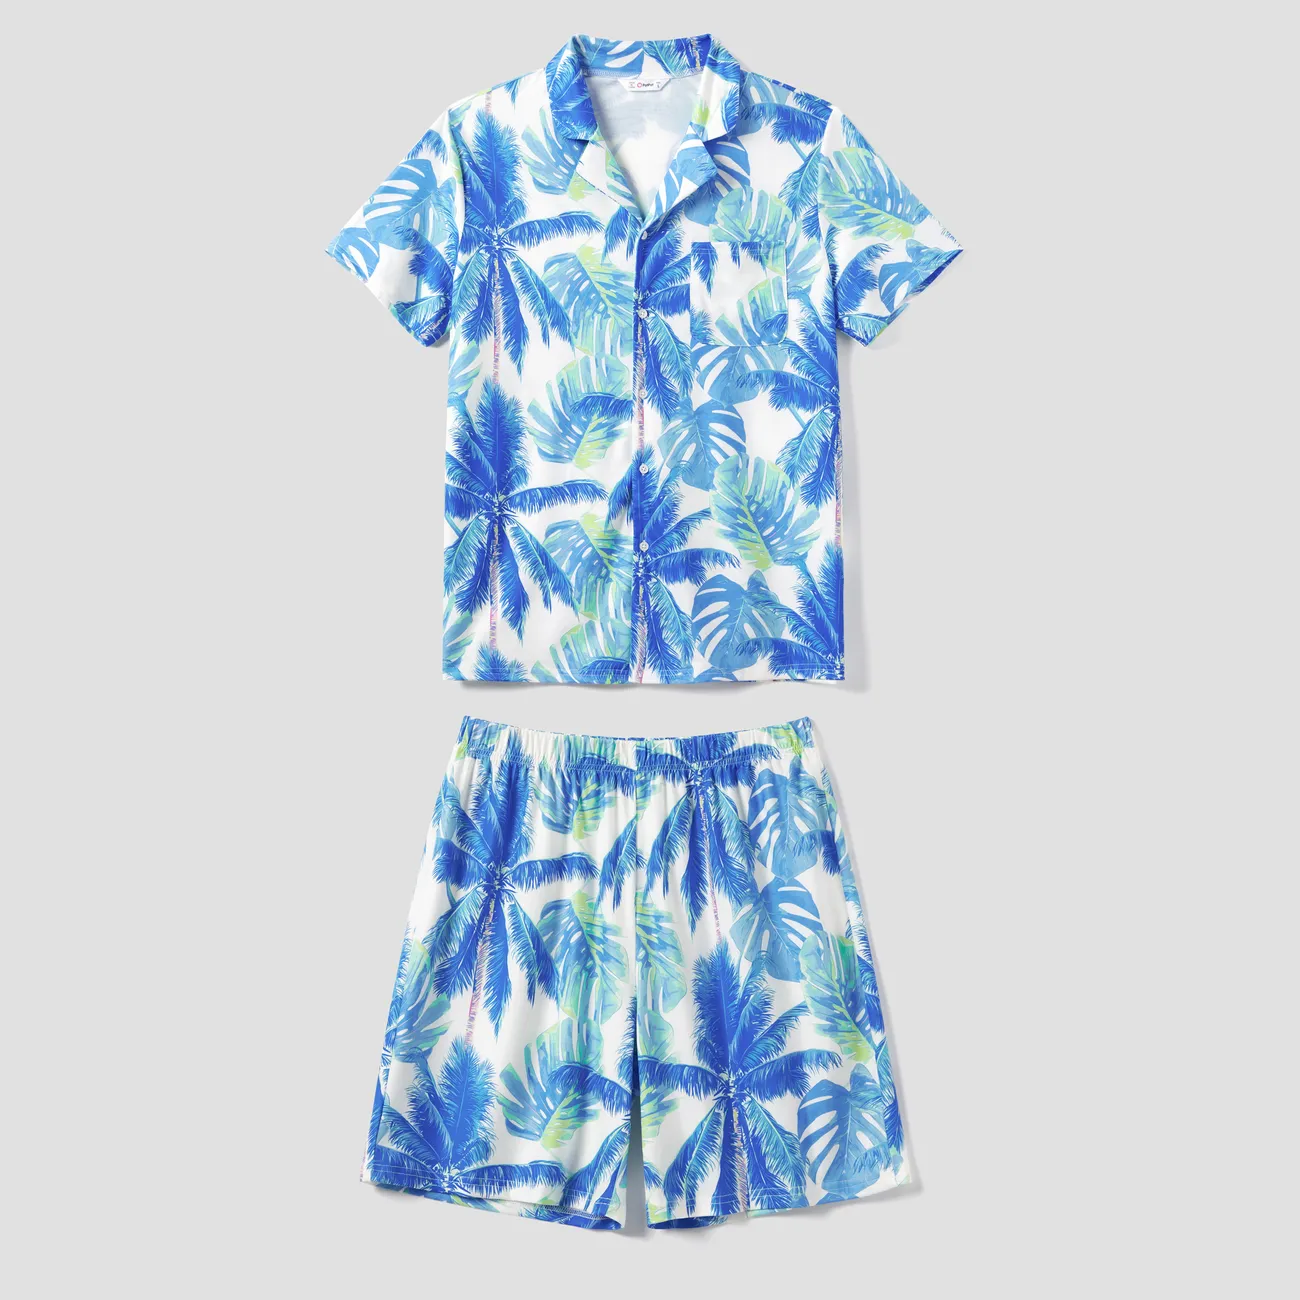 全家裝 熱帶植物花卉 短袖 親子裝 睡衣 (Flame Resistant) 藍白色 big image 1